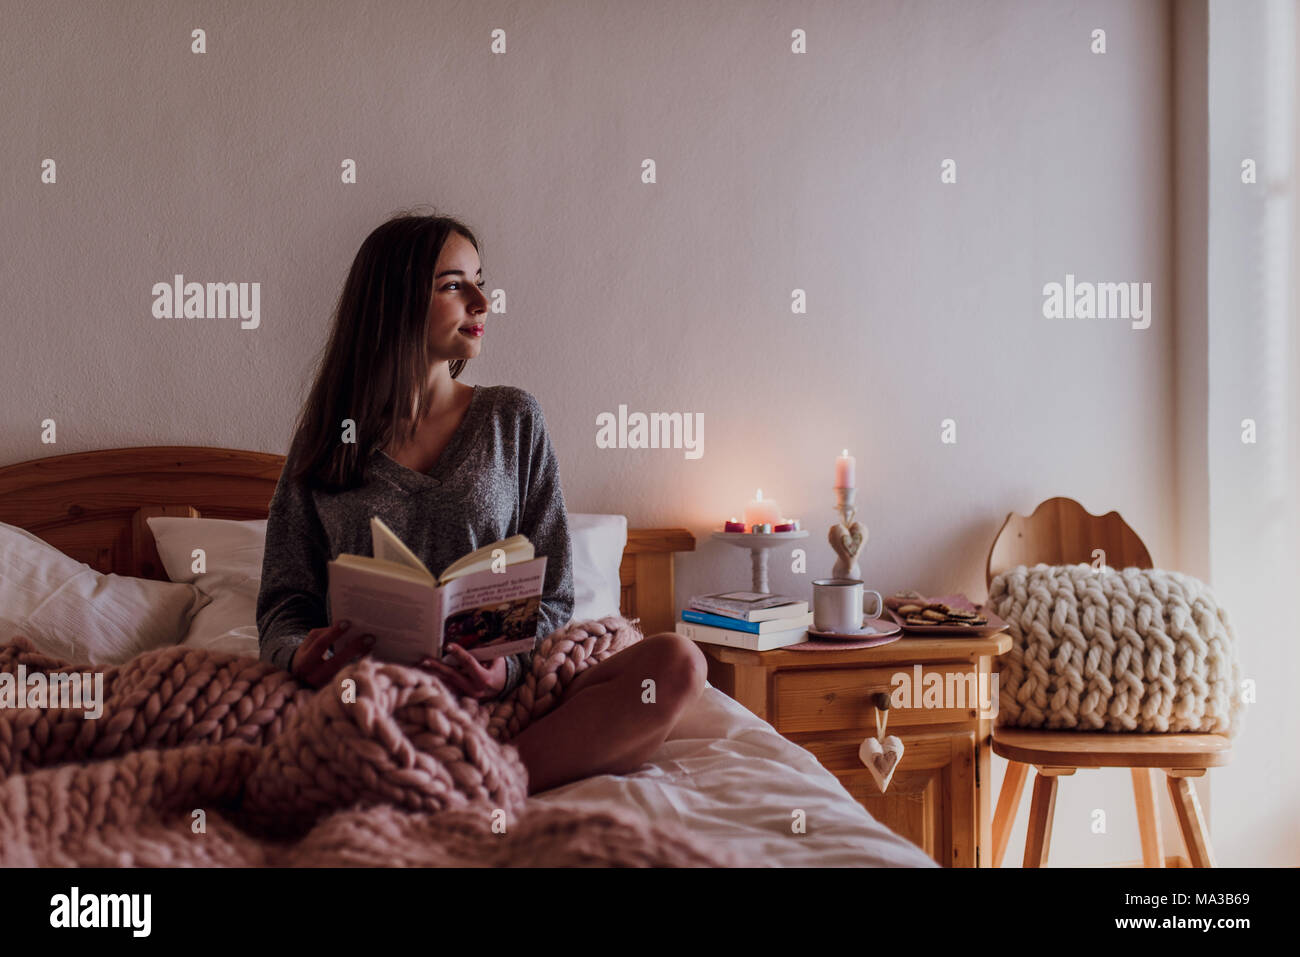 Junge Frau im Bett sitzen und ein Buch lesen Stockfoto